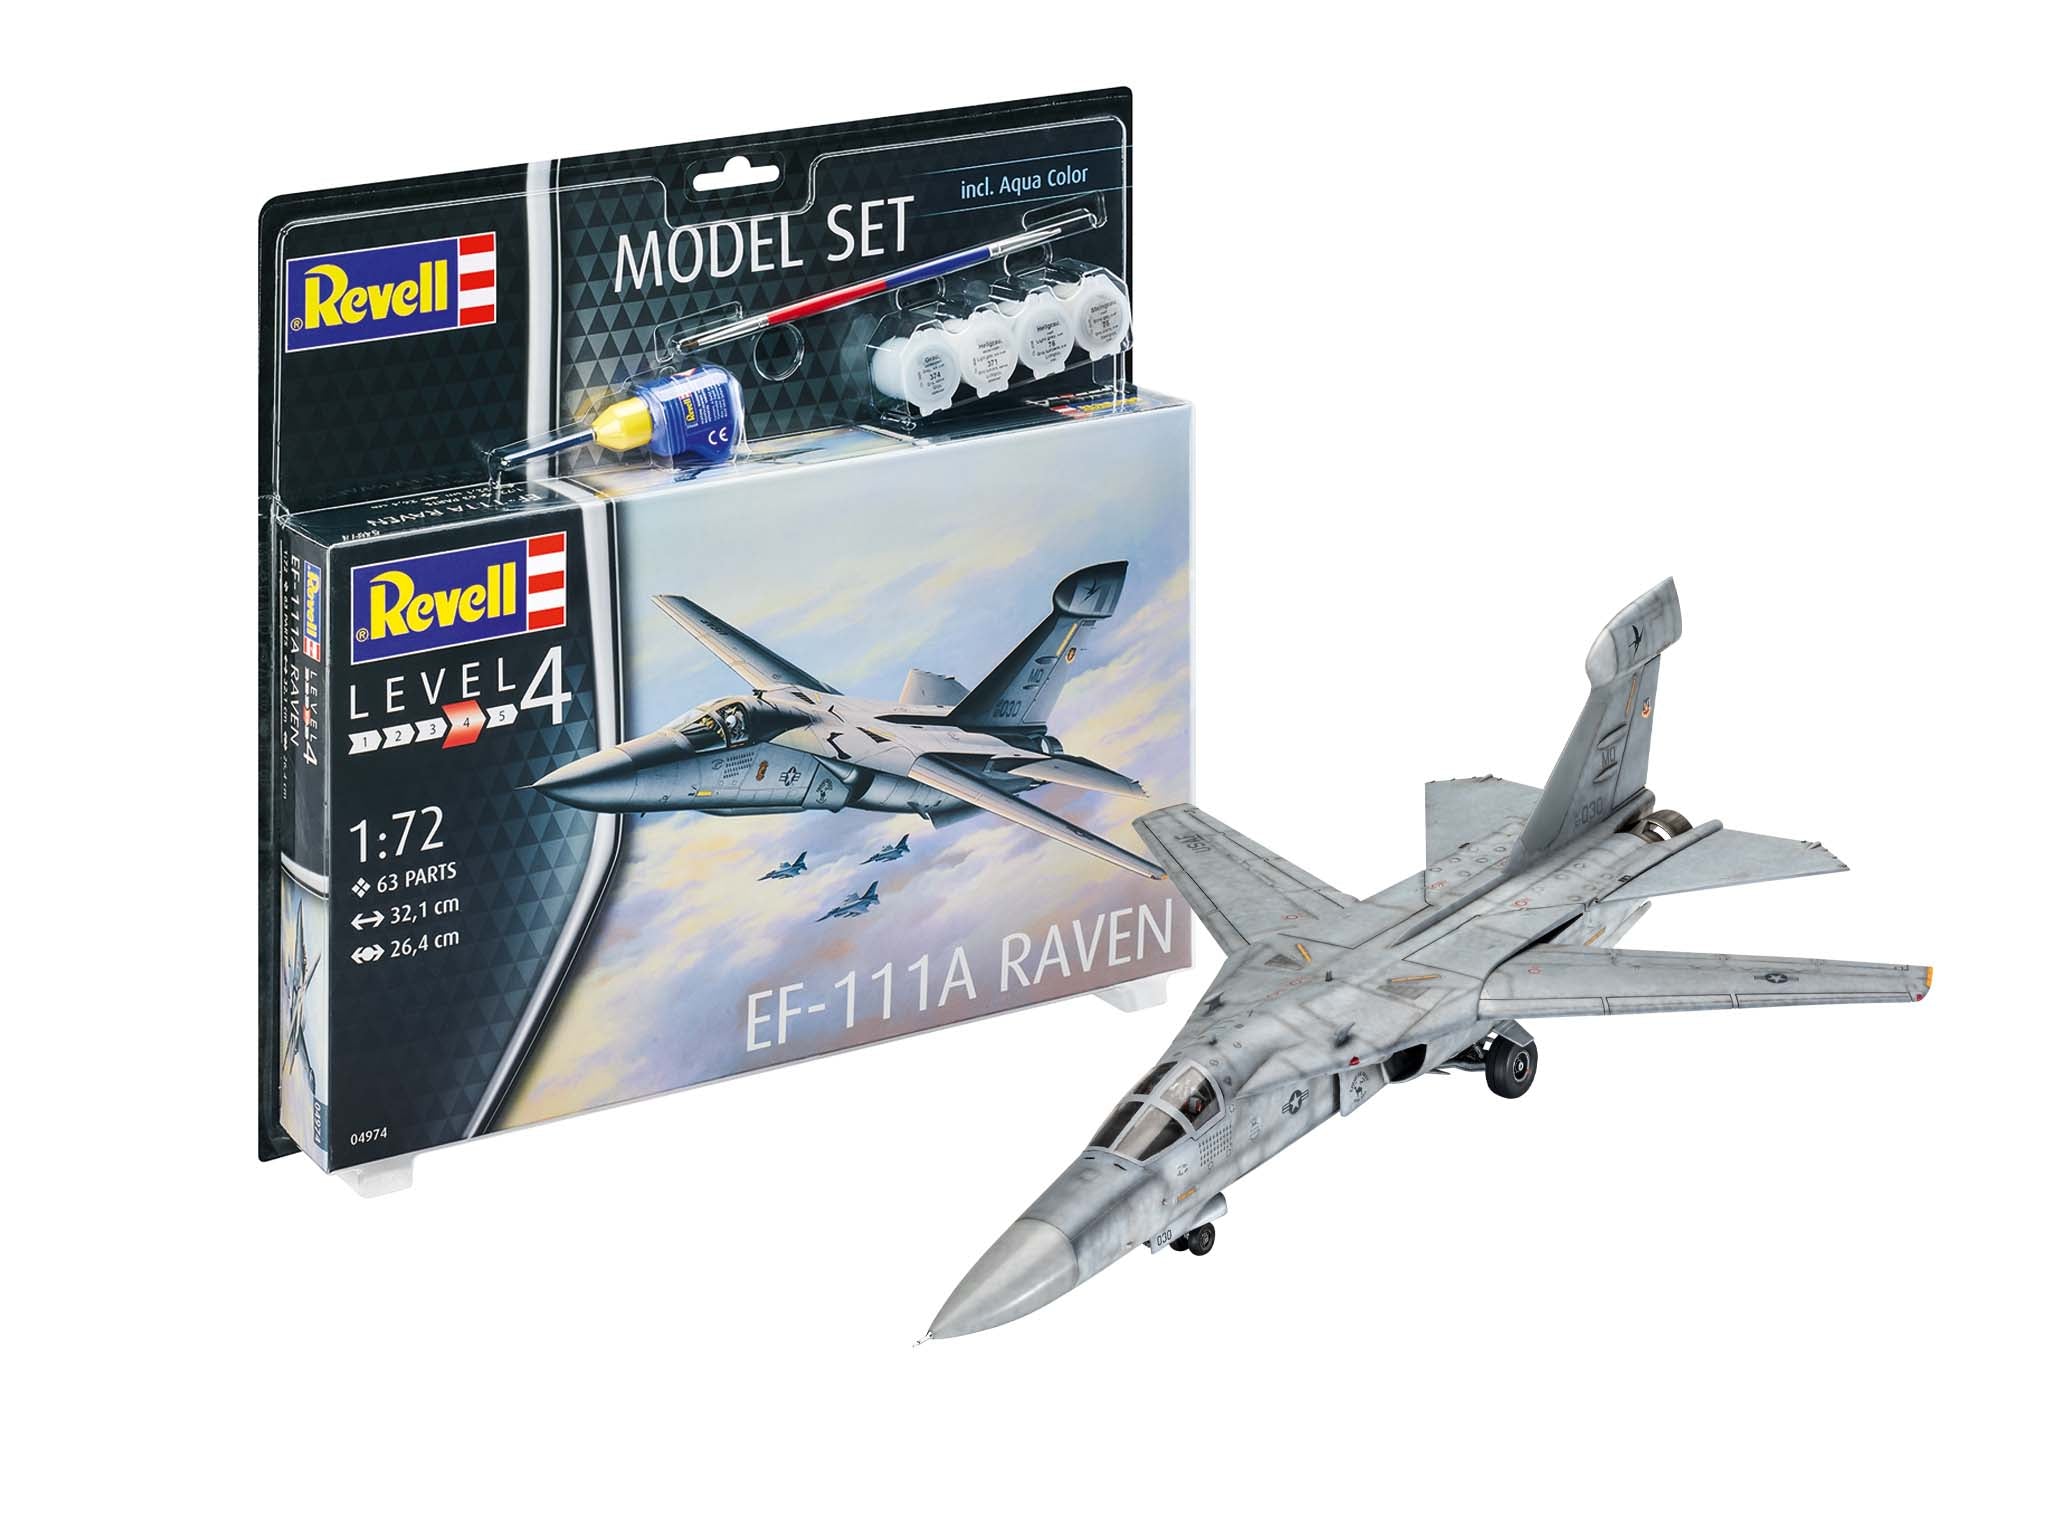 Plane Model Kit Revell Model Set EF-111A Raven 1:72